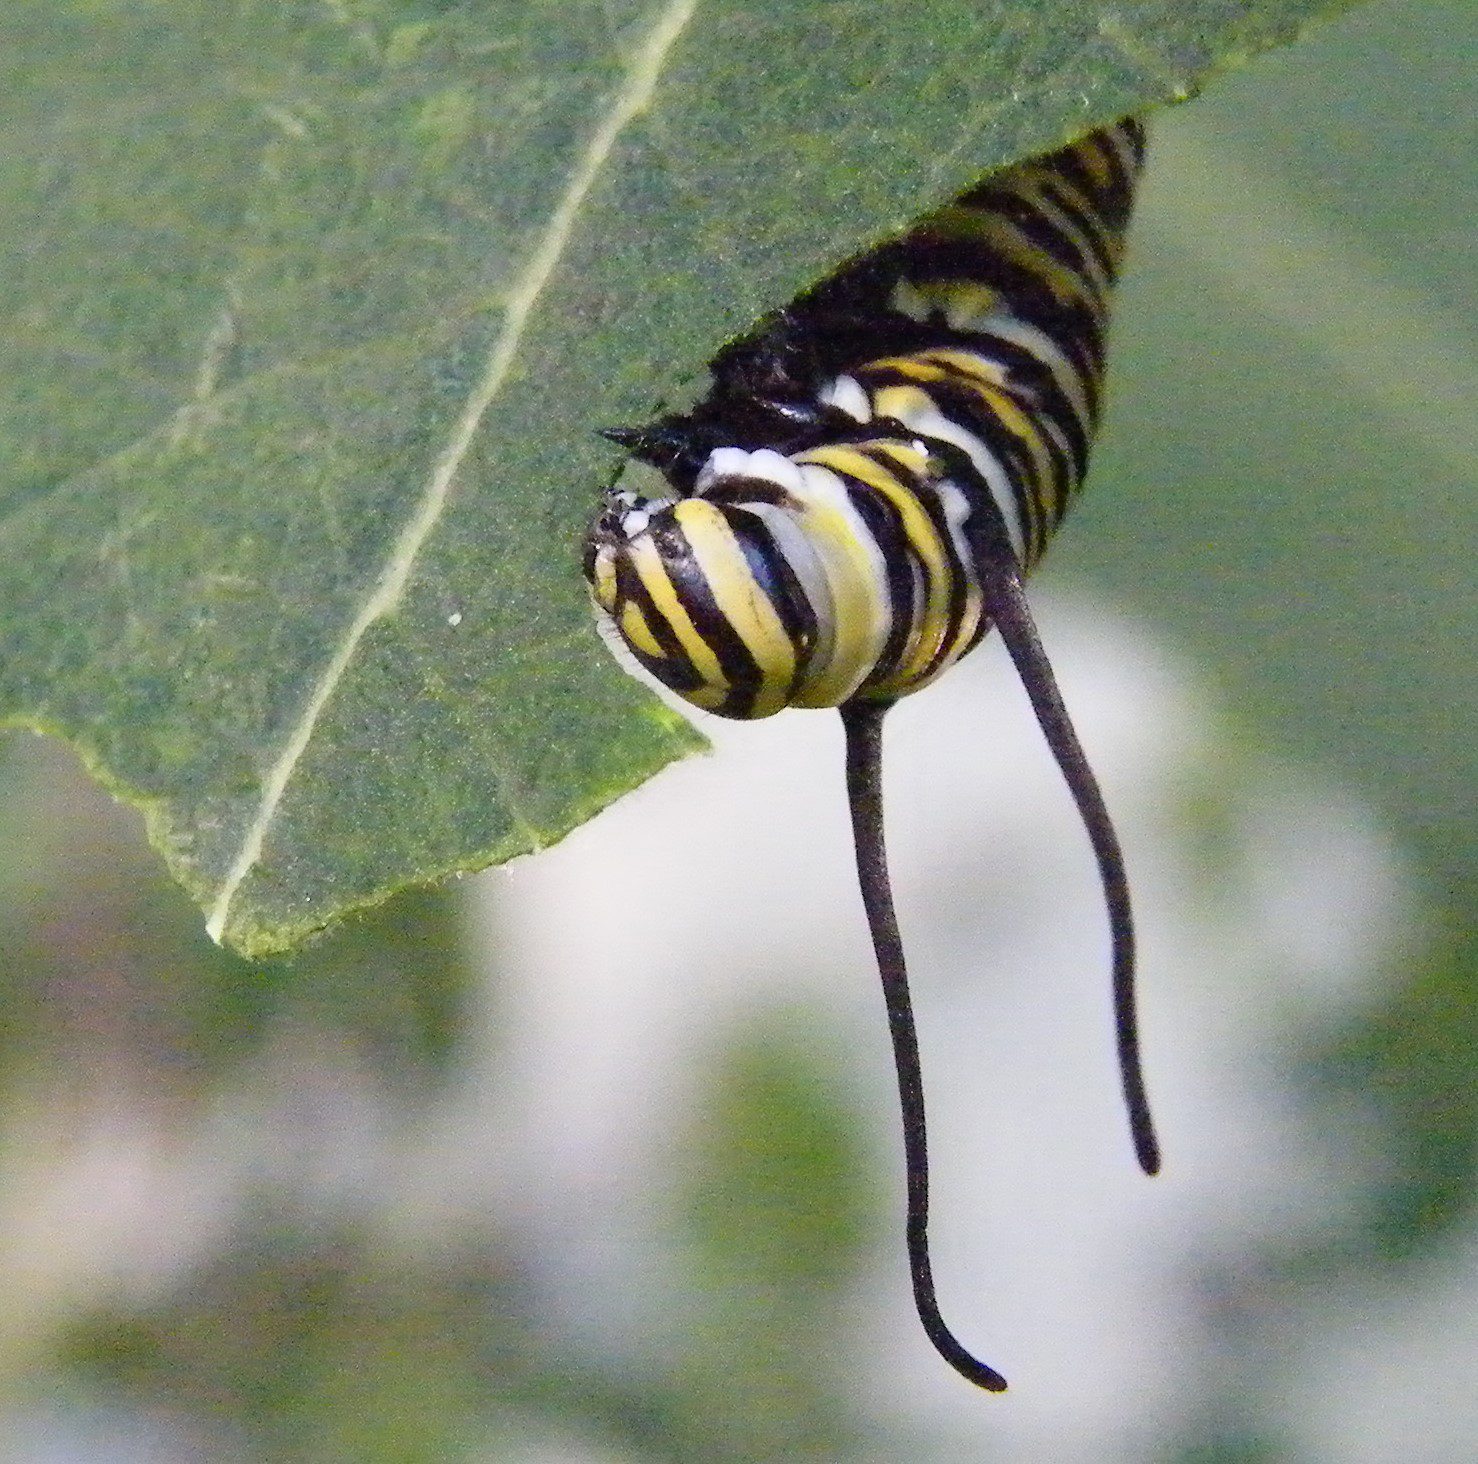 A fully grown Monarch Butterfly caterpillar